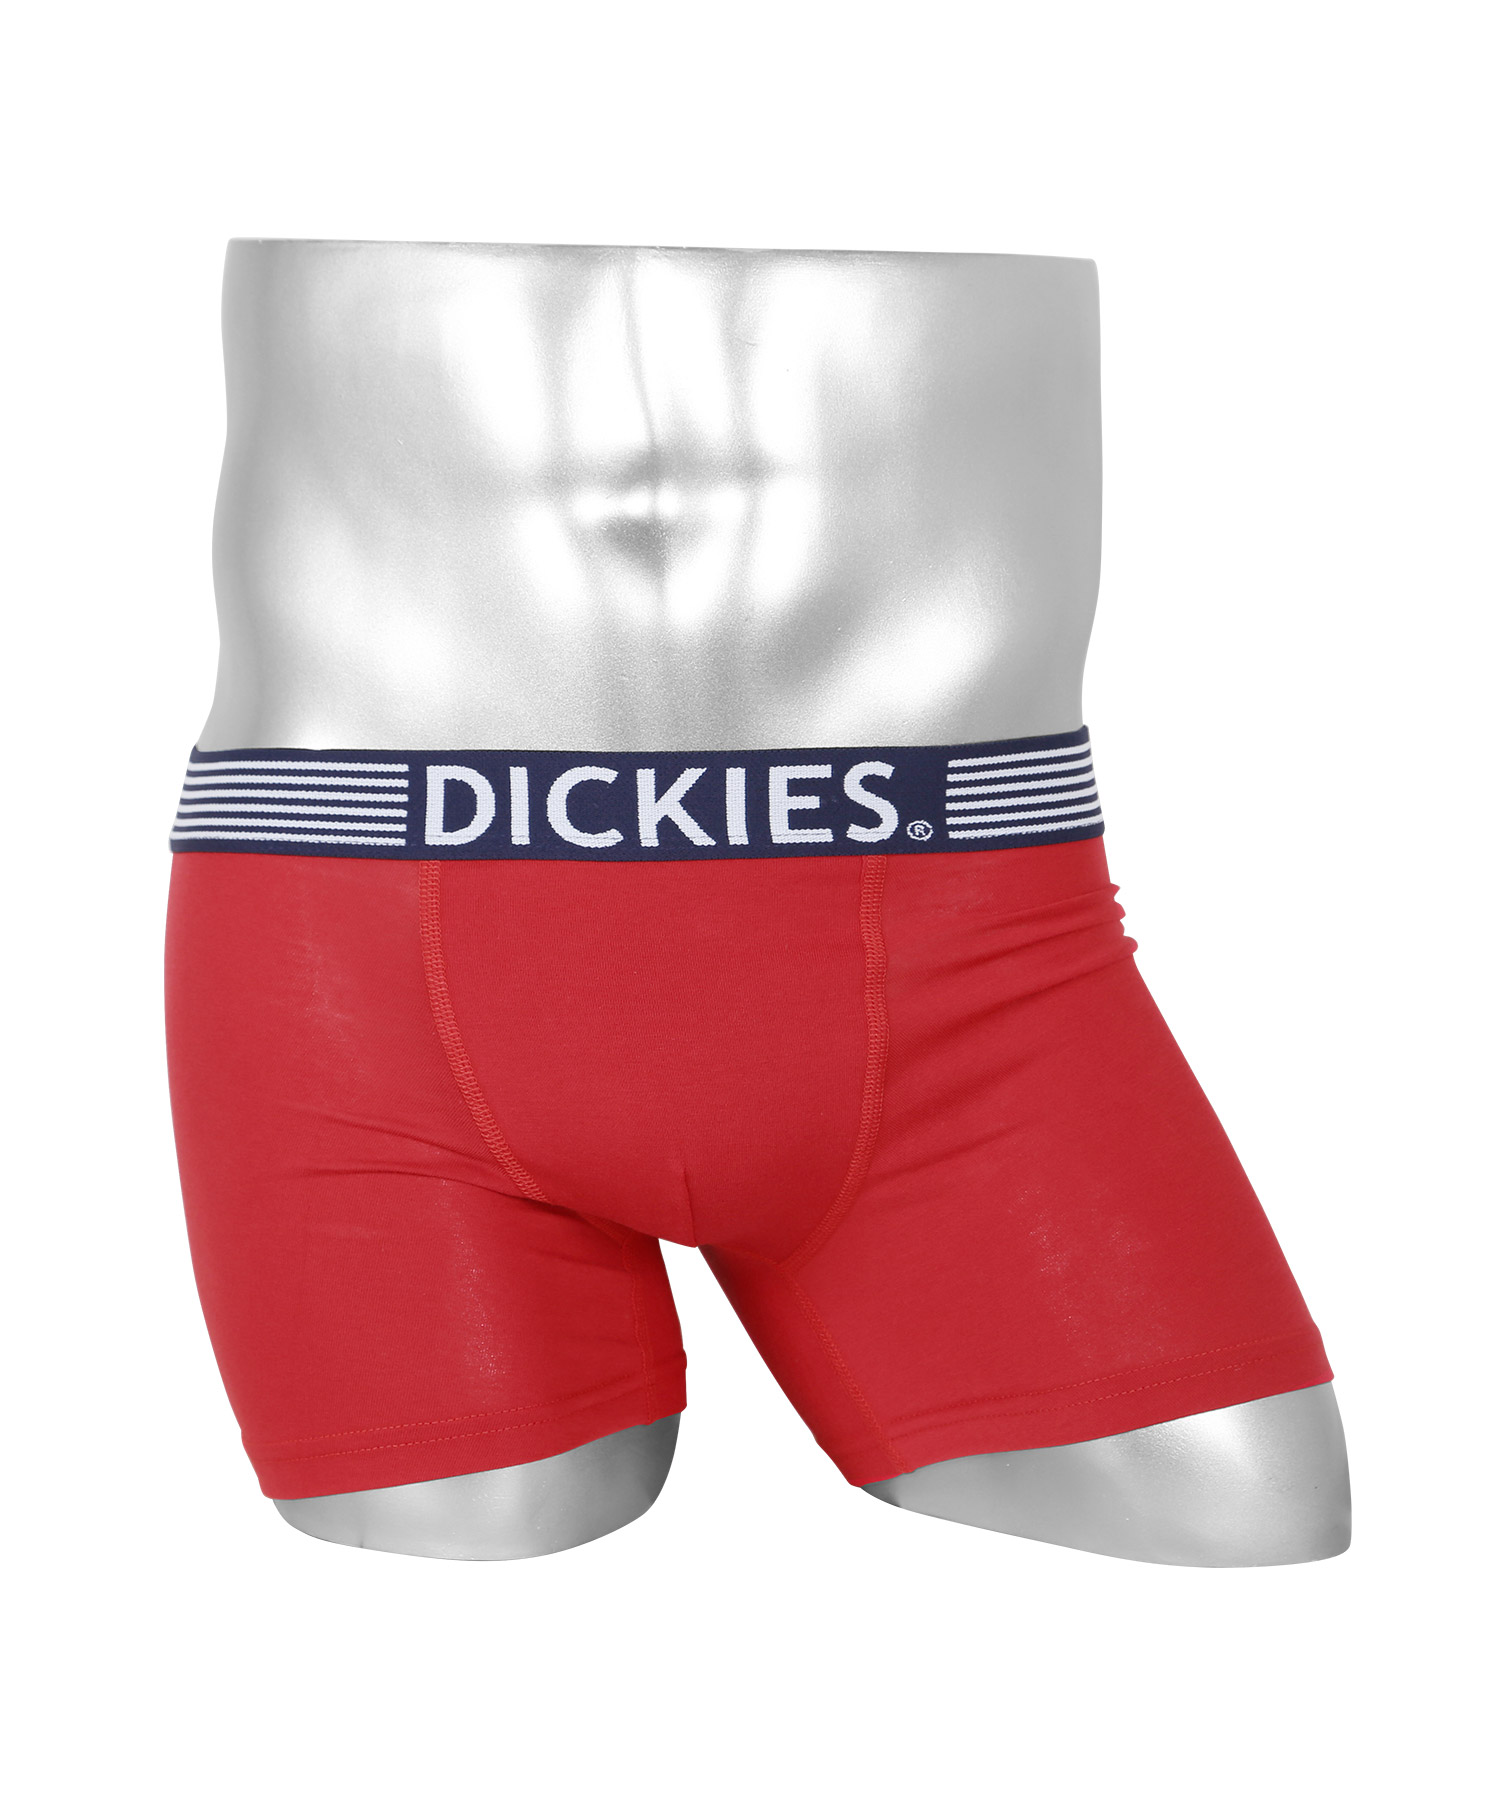 ディッキーズ Dickies ボクサーパンツ メンズ アンダーウェア 男性 下着 コットン ブランド...